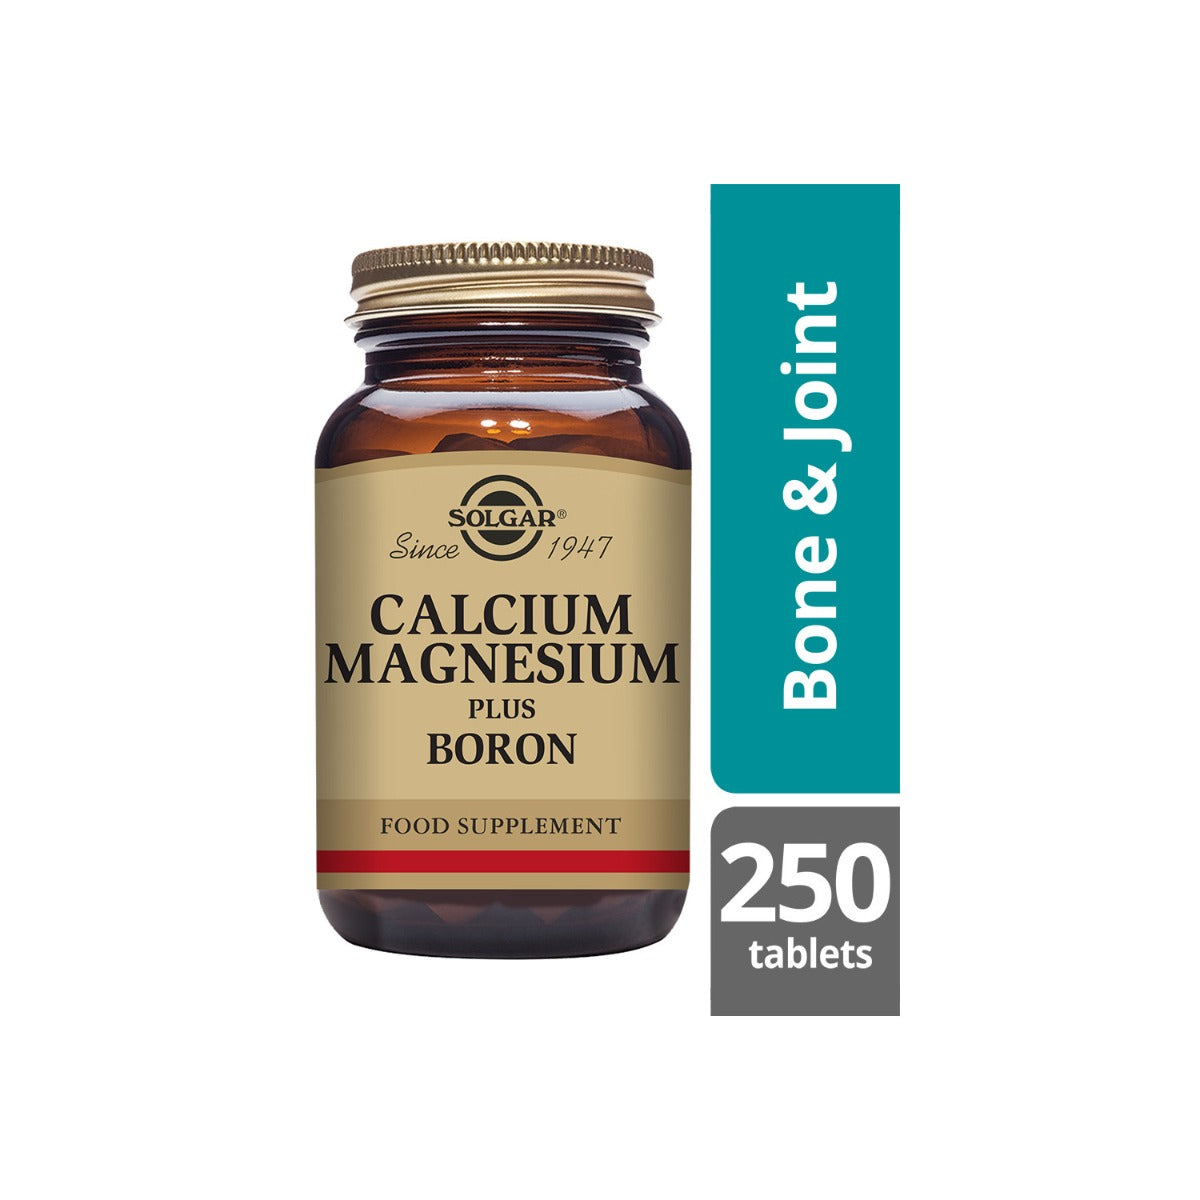 Solgar® Calcium Magnesium Plus Boron Tablets - Pack of 250